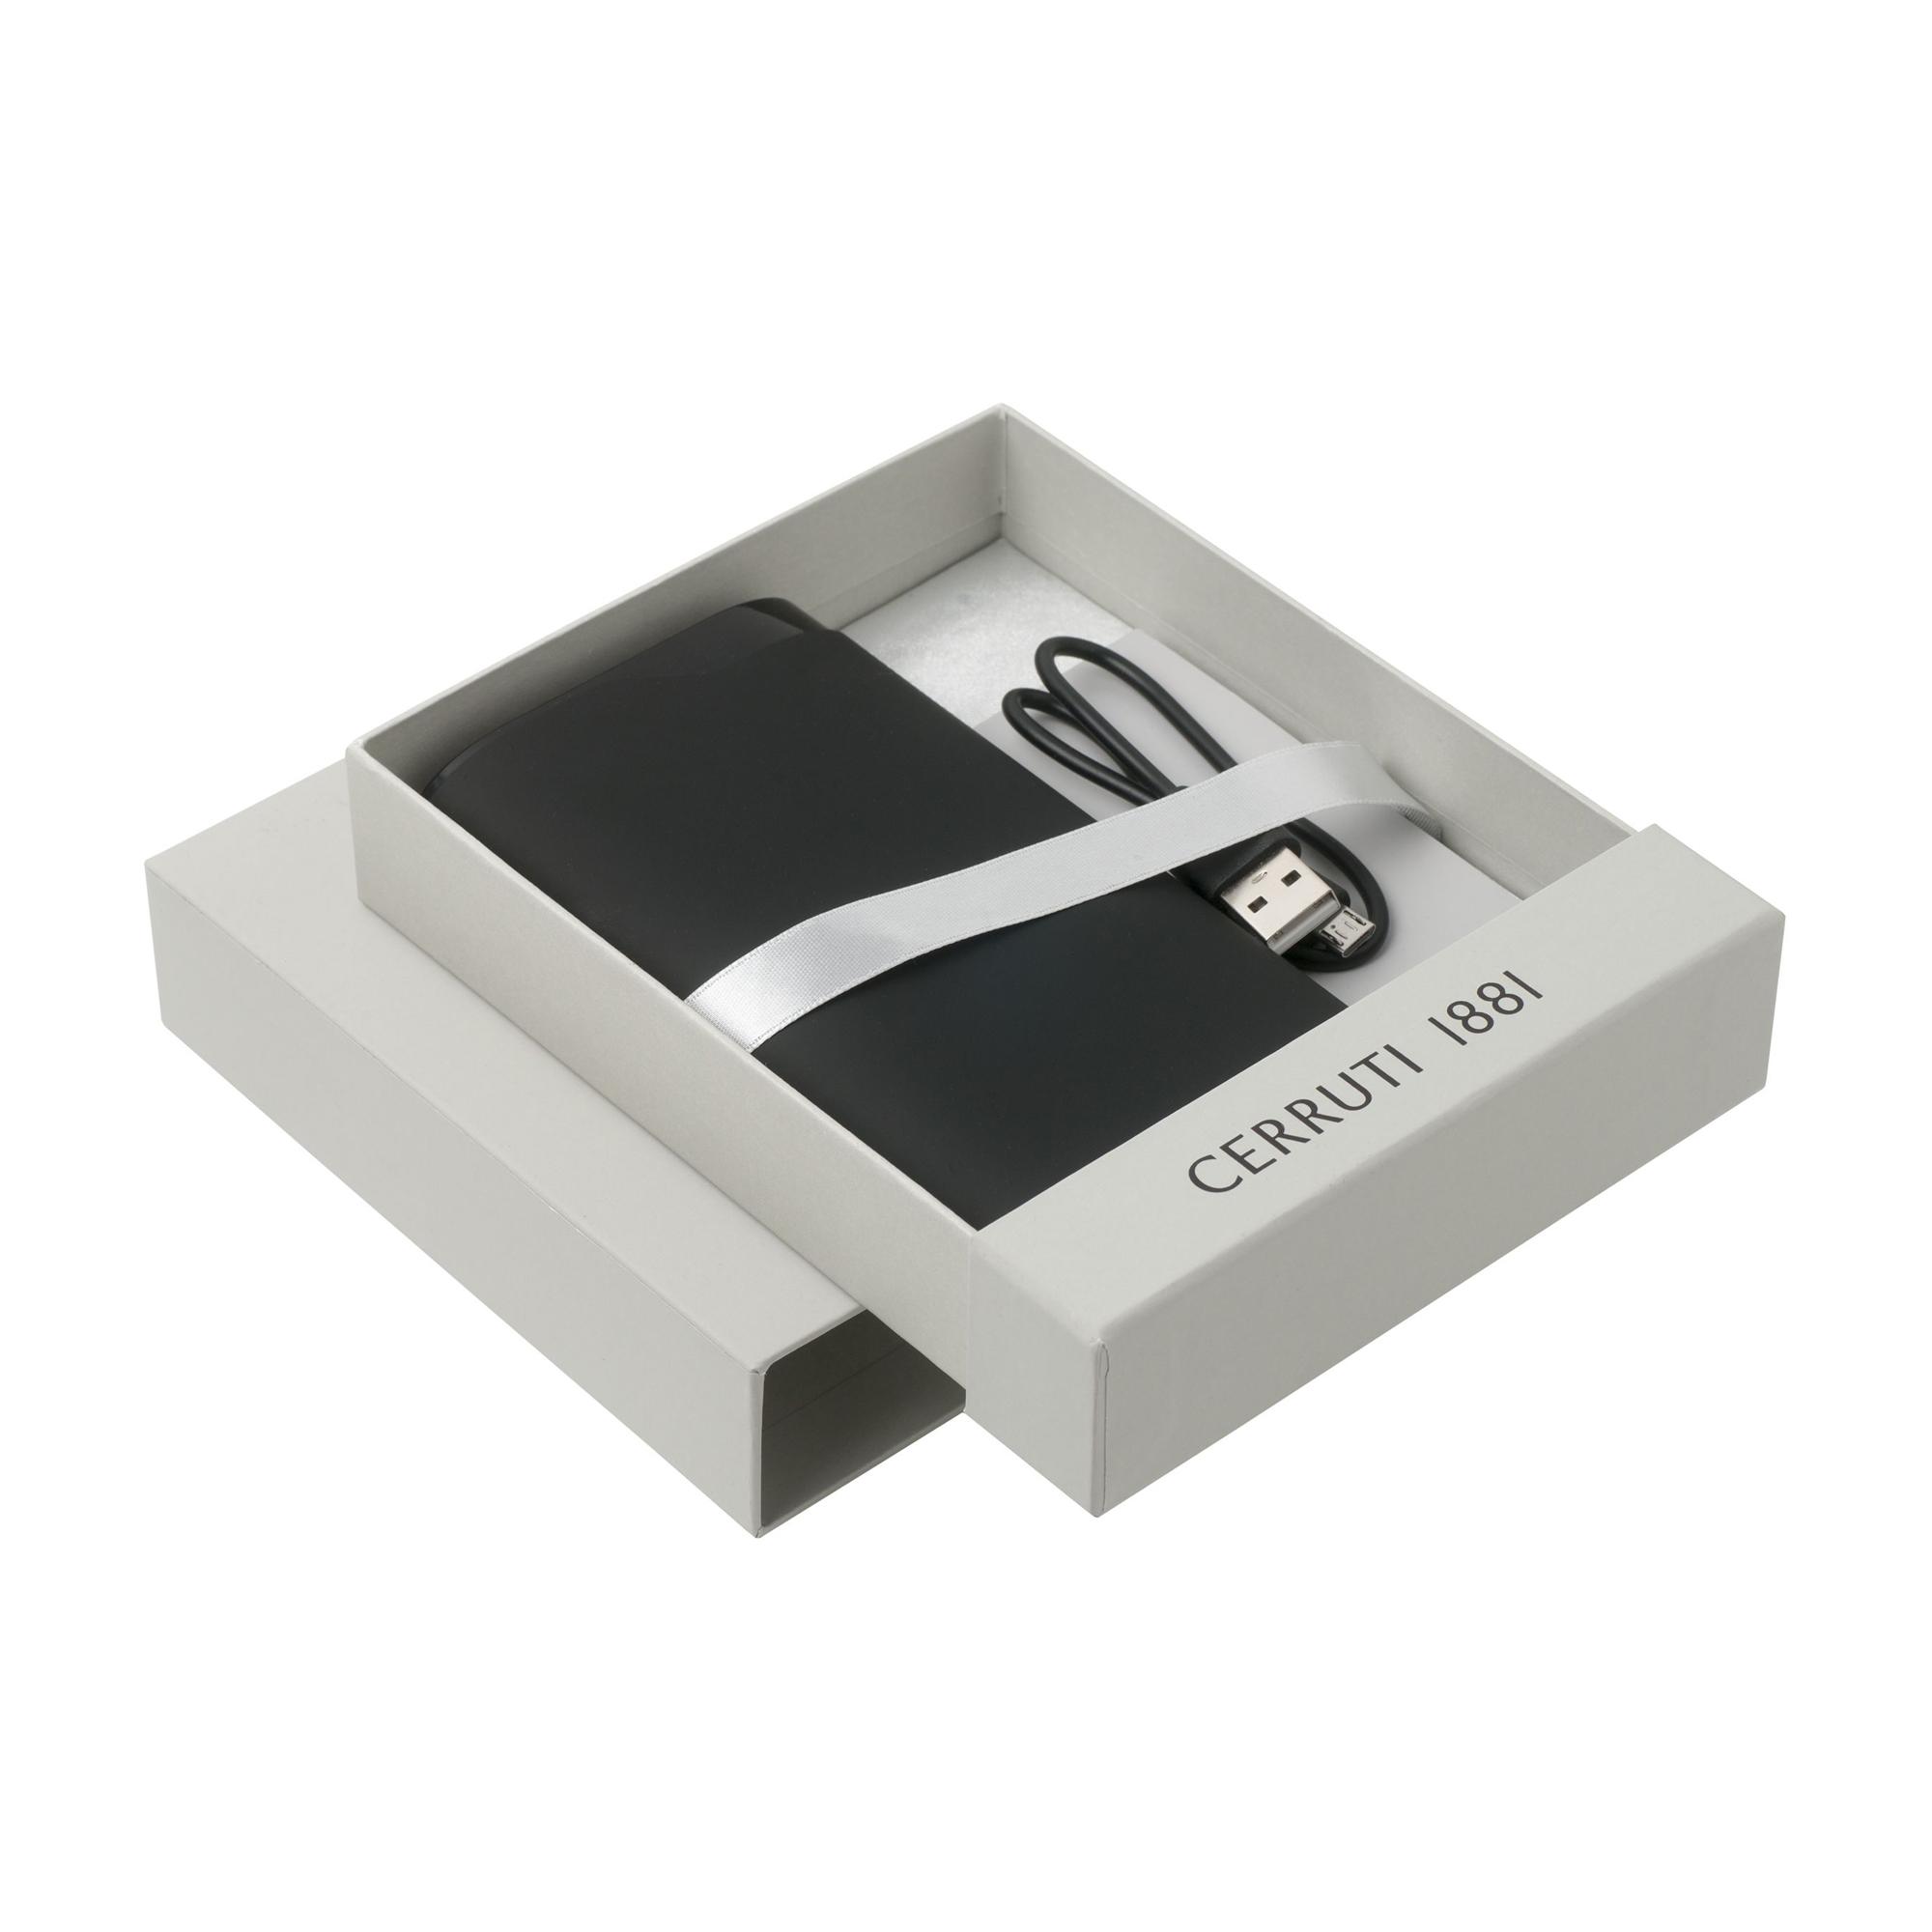 Зарядное устройство "Olo", 8000 mAh, шильд в покрытии soft touch, цвет черный - купить оптом